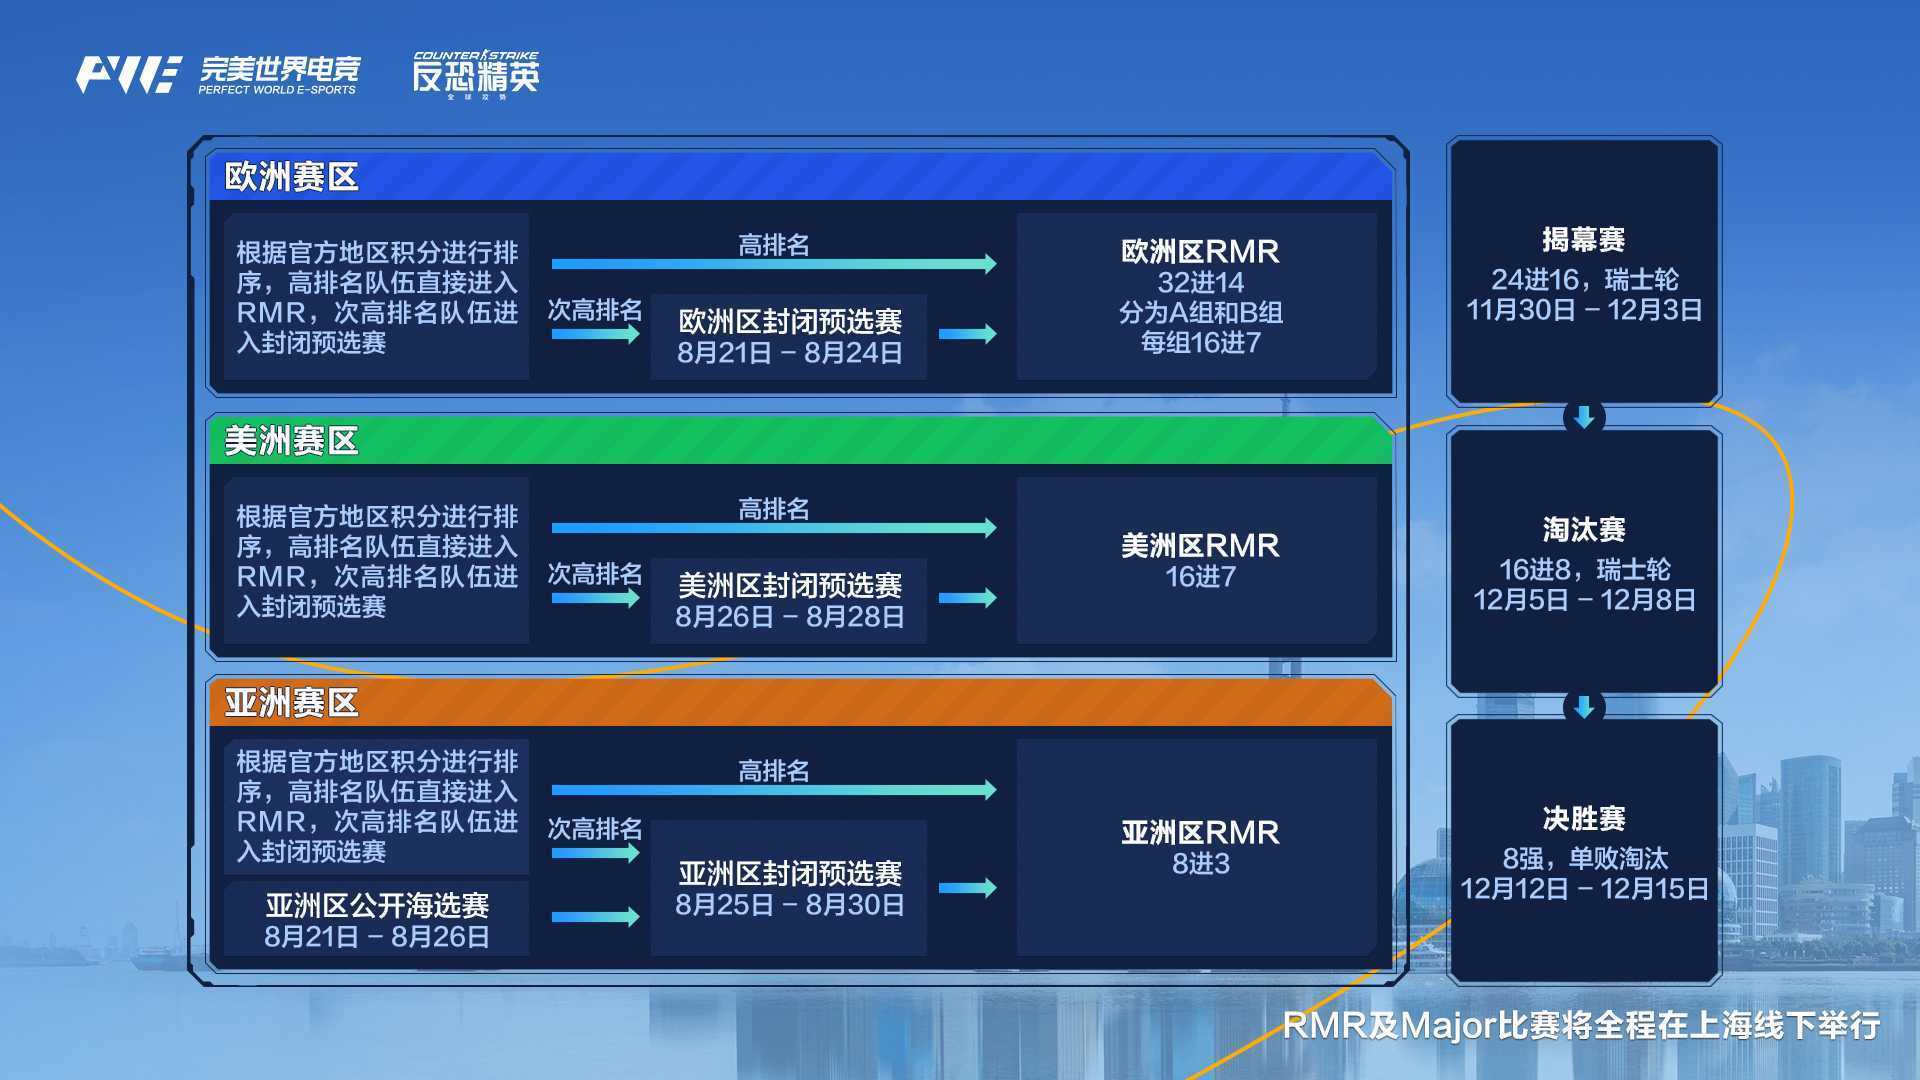 上海Major与三赛区RMR全程在中国举行，为期35天的电竞盛宴！V社调整预选赛邀请规则